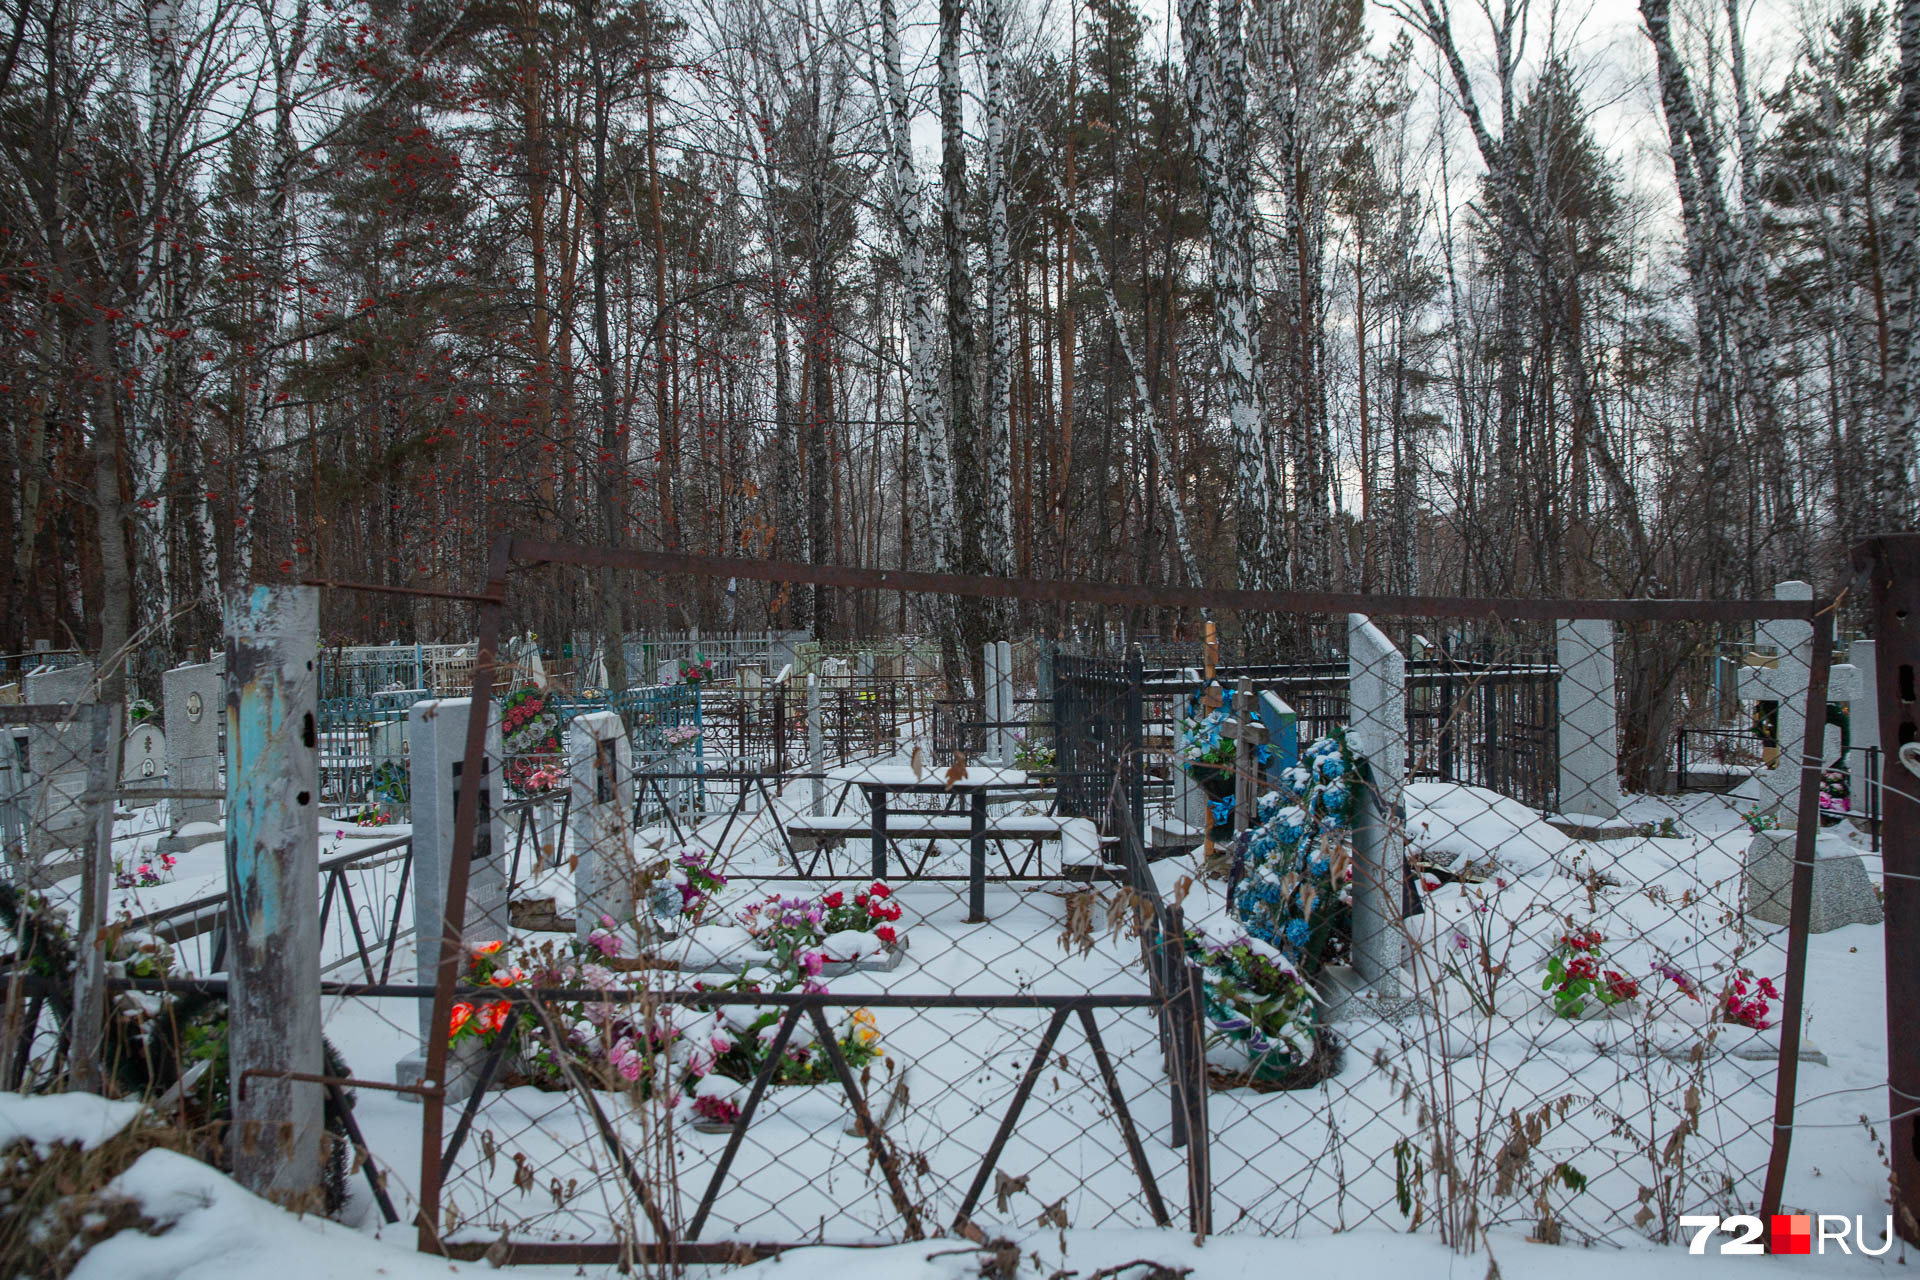 Могилы на кладбище стоят плотно друг к другу. К некоторым порой трудно пройти